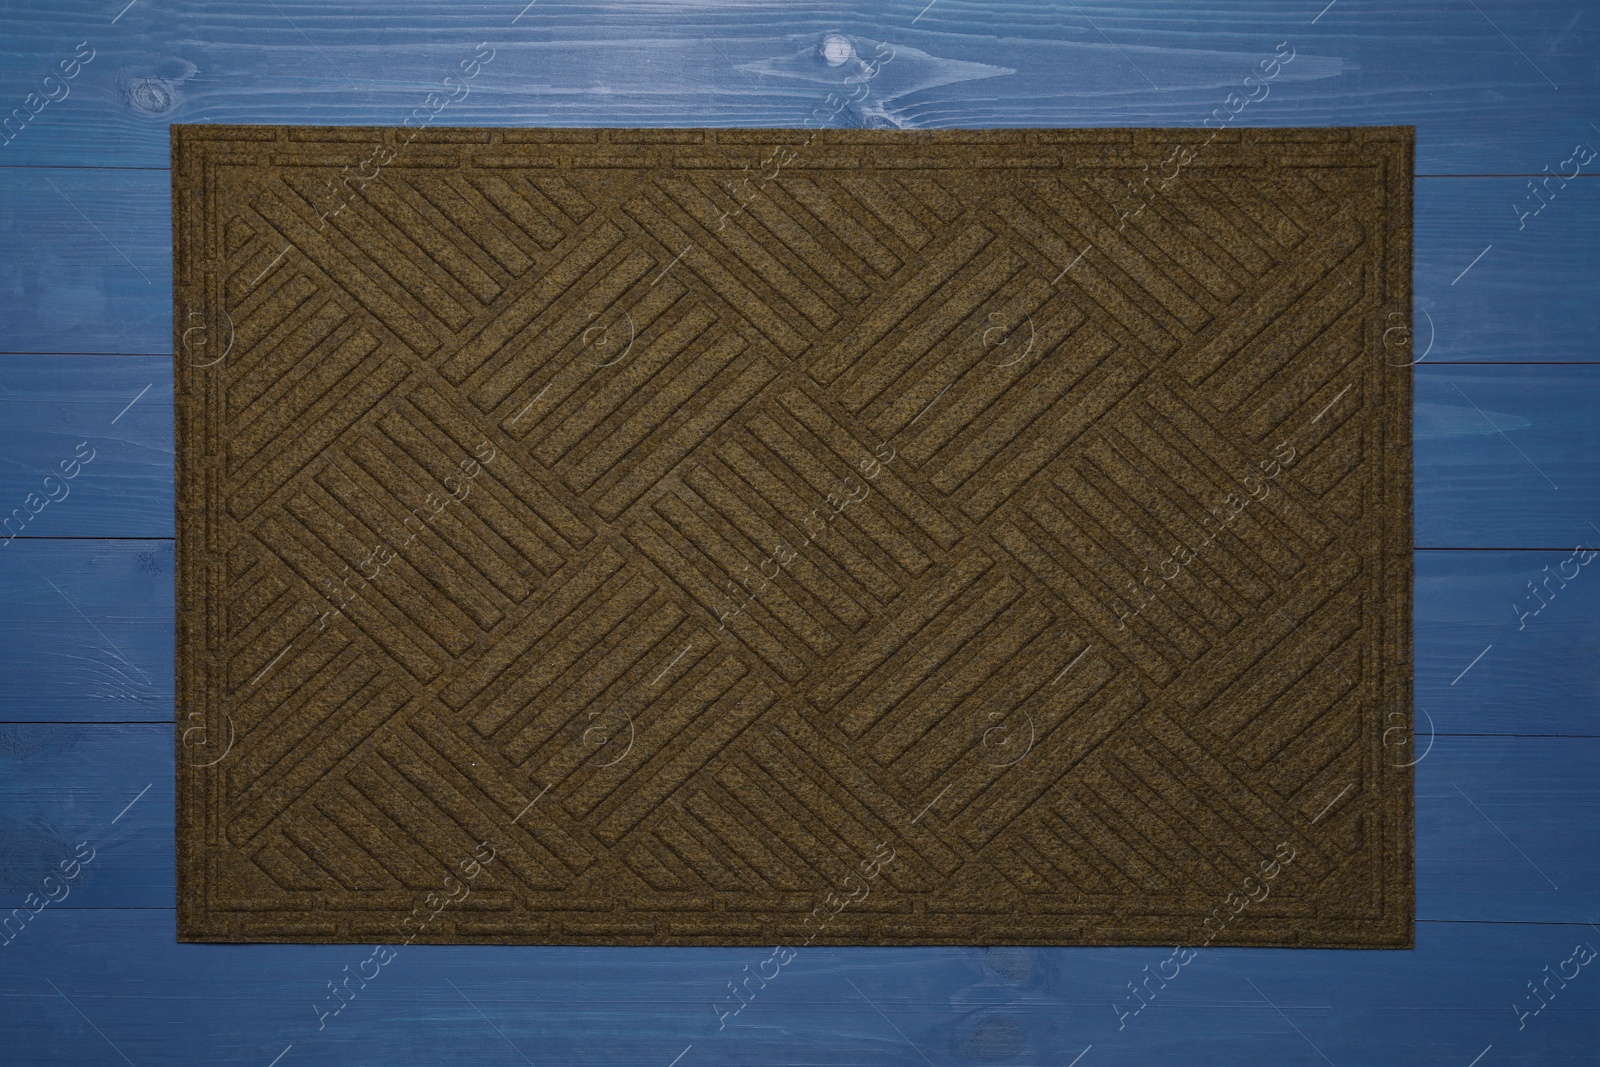 Photo of New clean door mat on blue wooden floor, top view